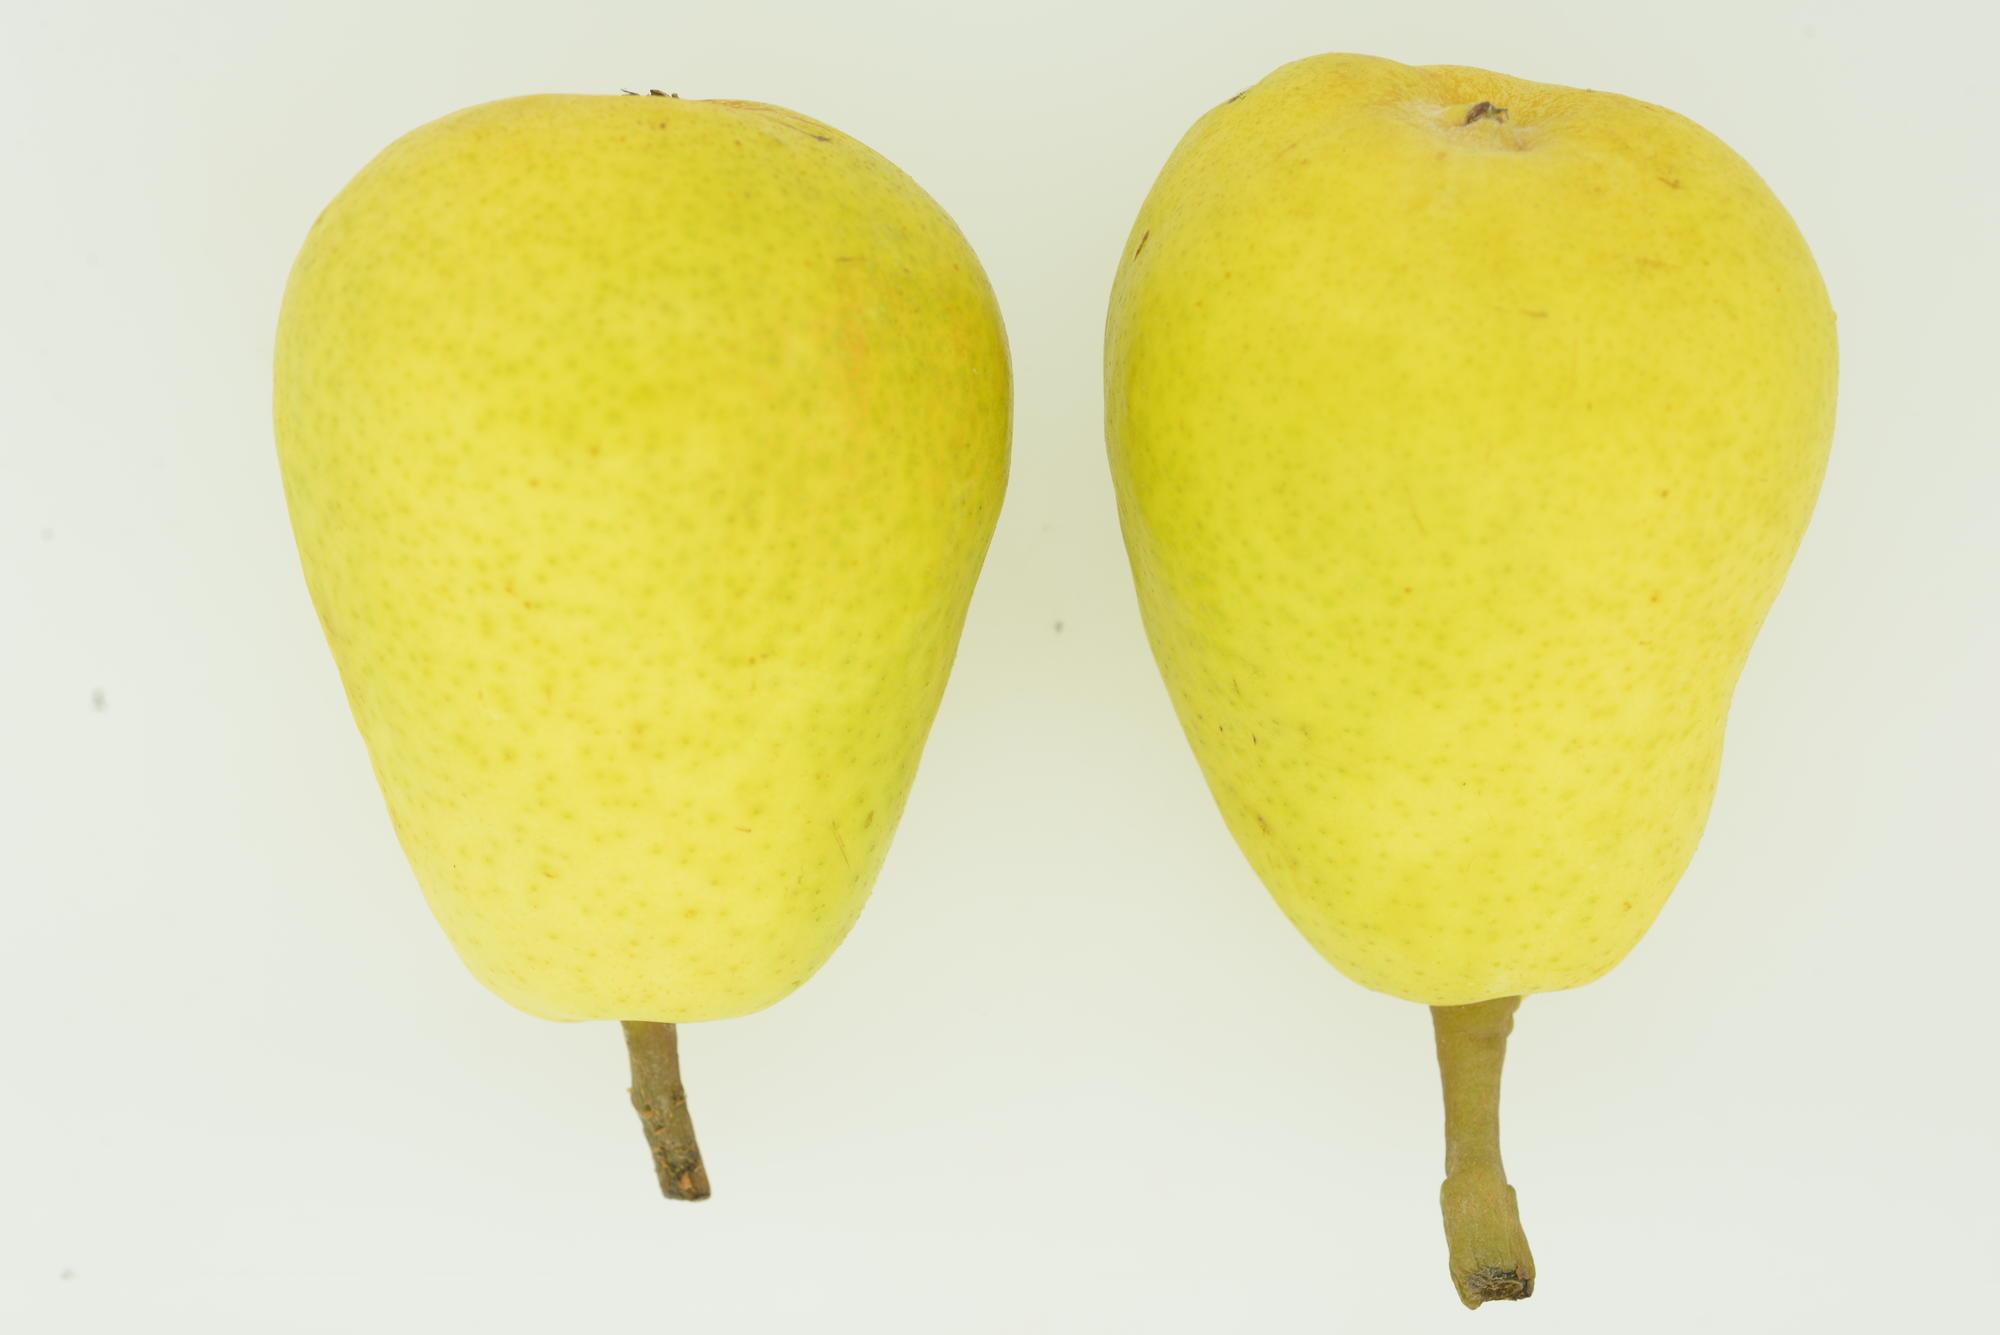 2 yellow pears